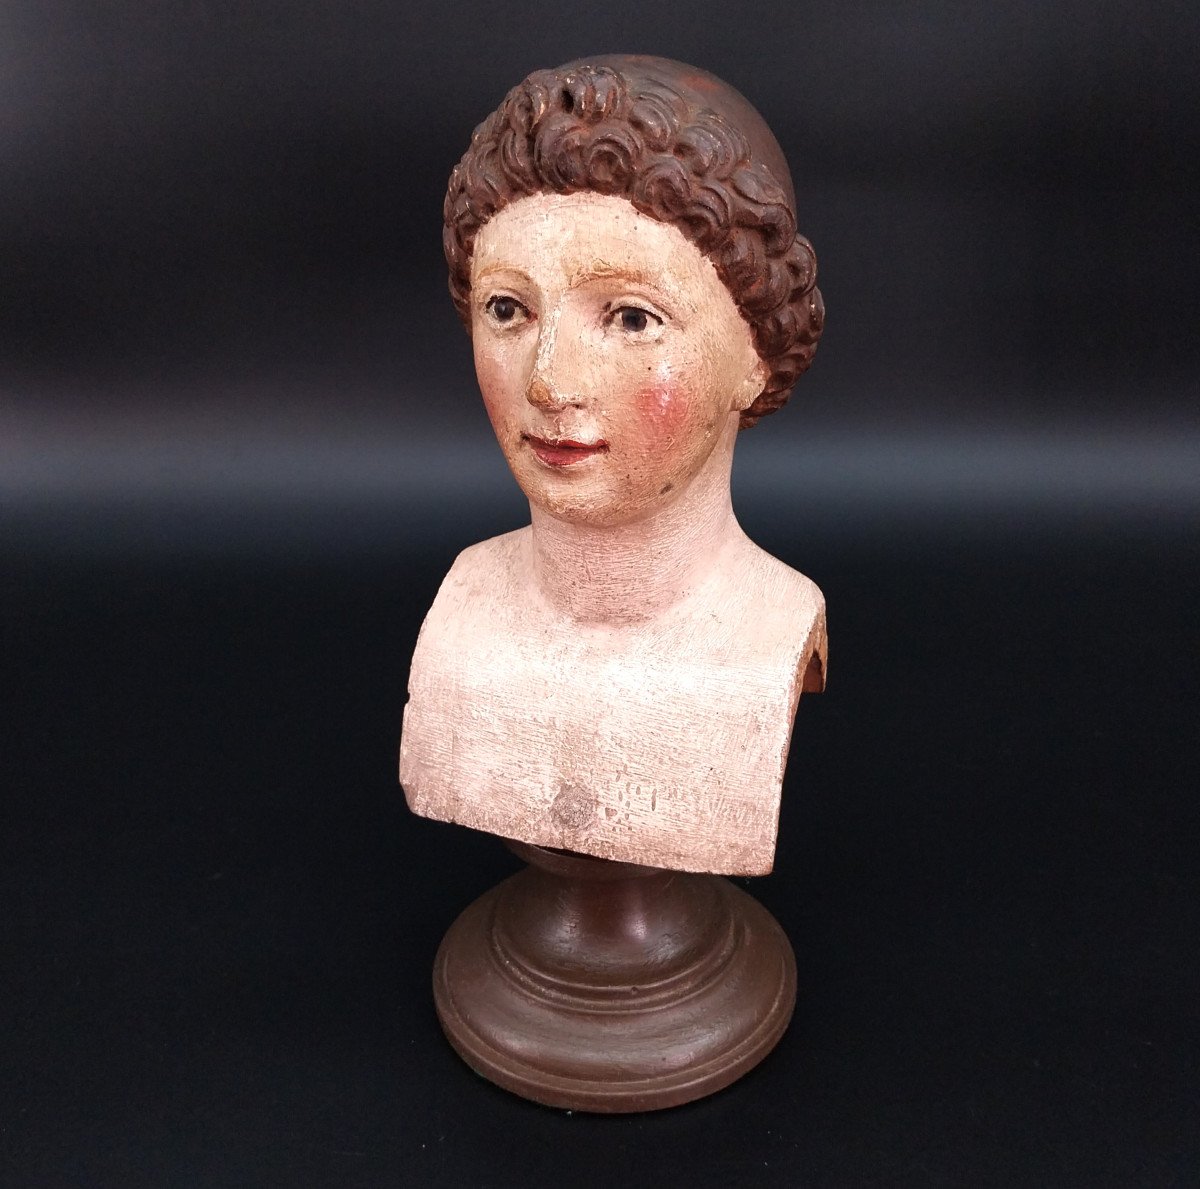 Piccolo busto, scultura, scolpito a mano in legno policromo del '700.